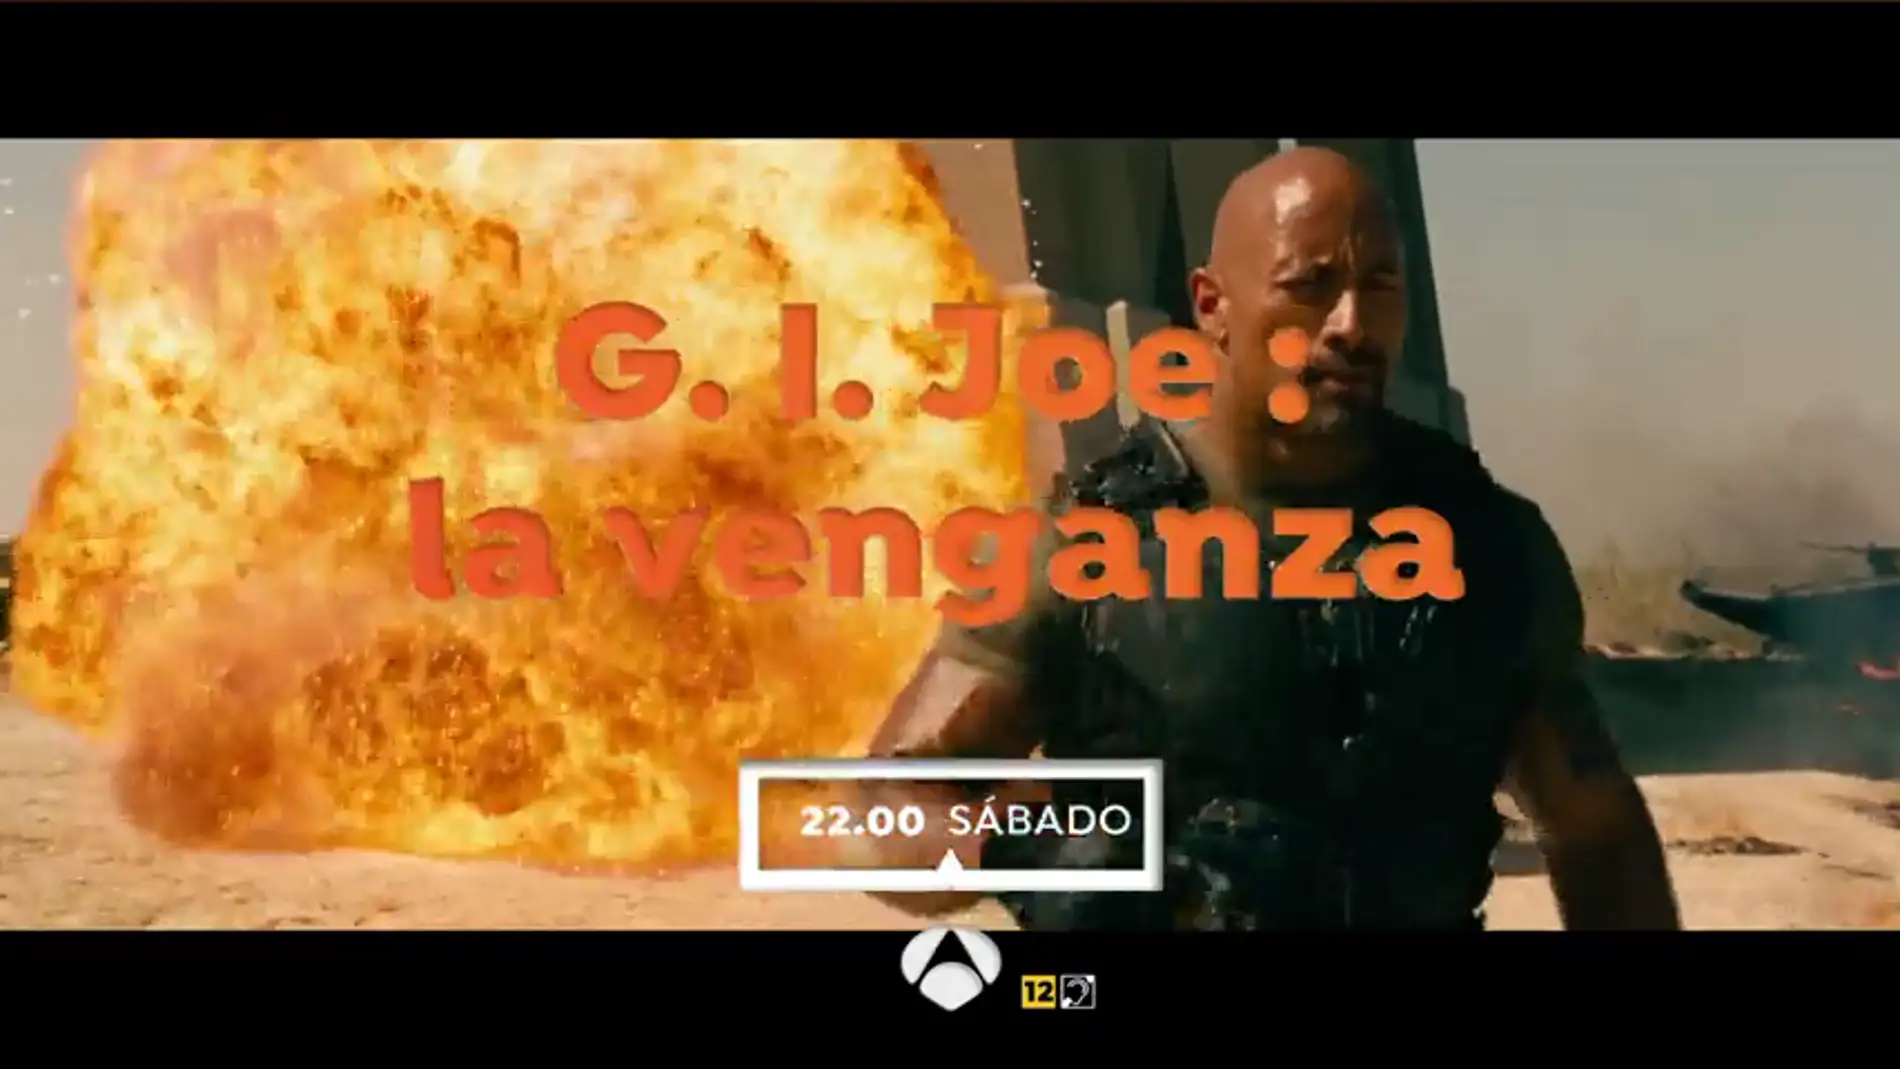 Cine de acción en El Peliculón con 'GI Joe: La Venganza'